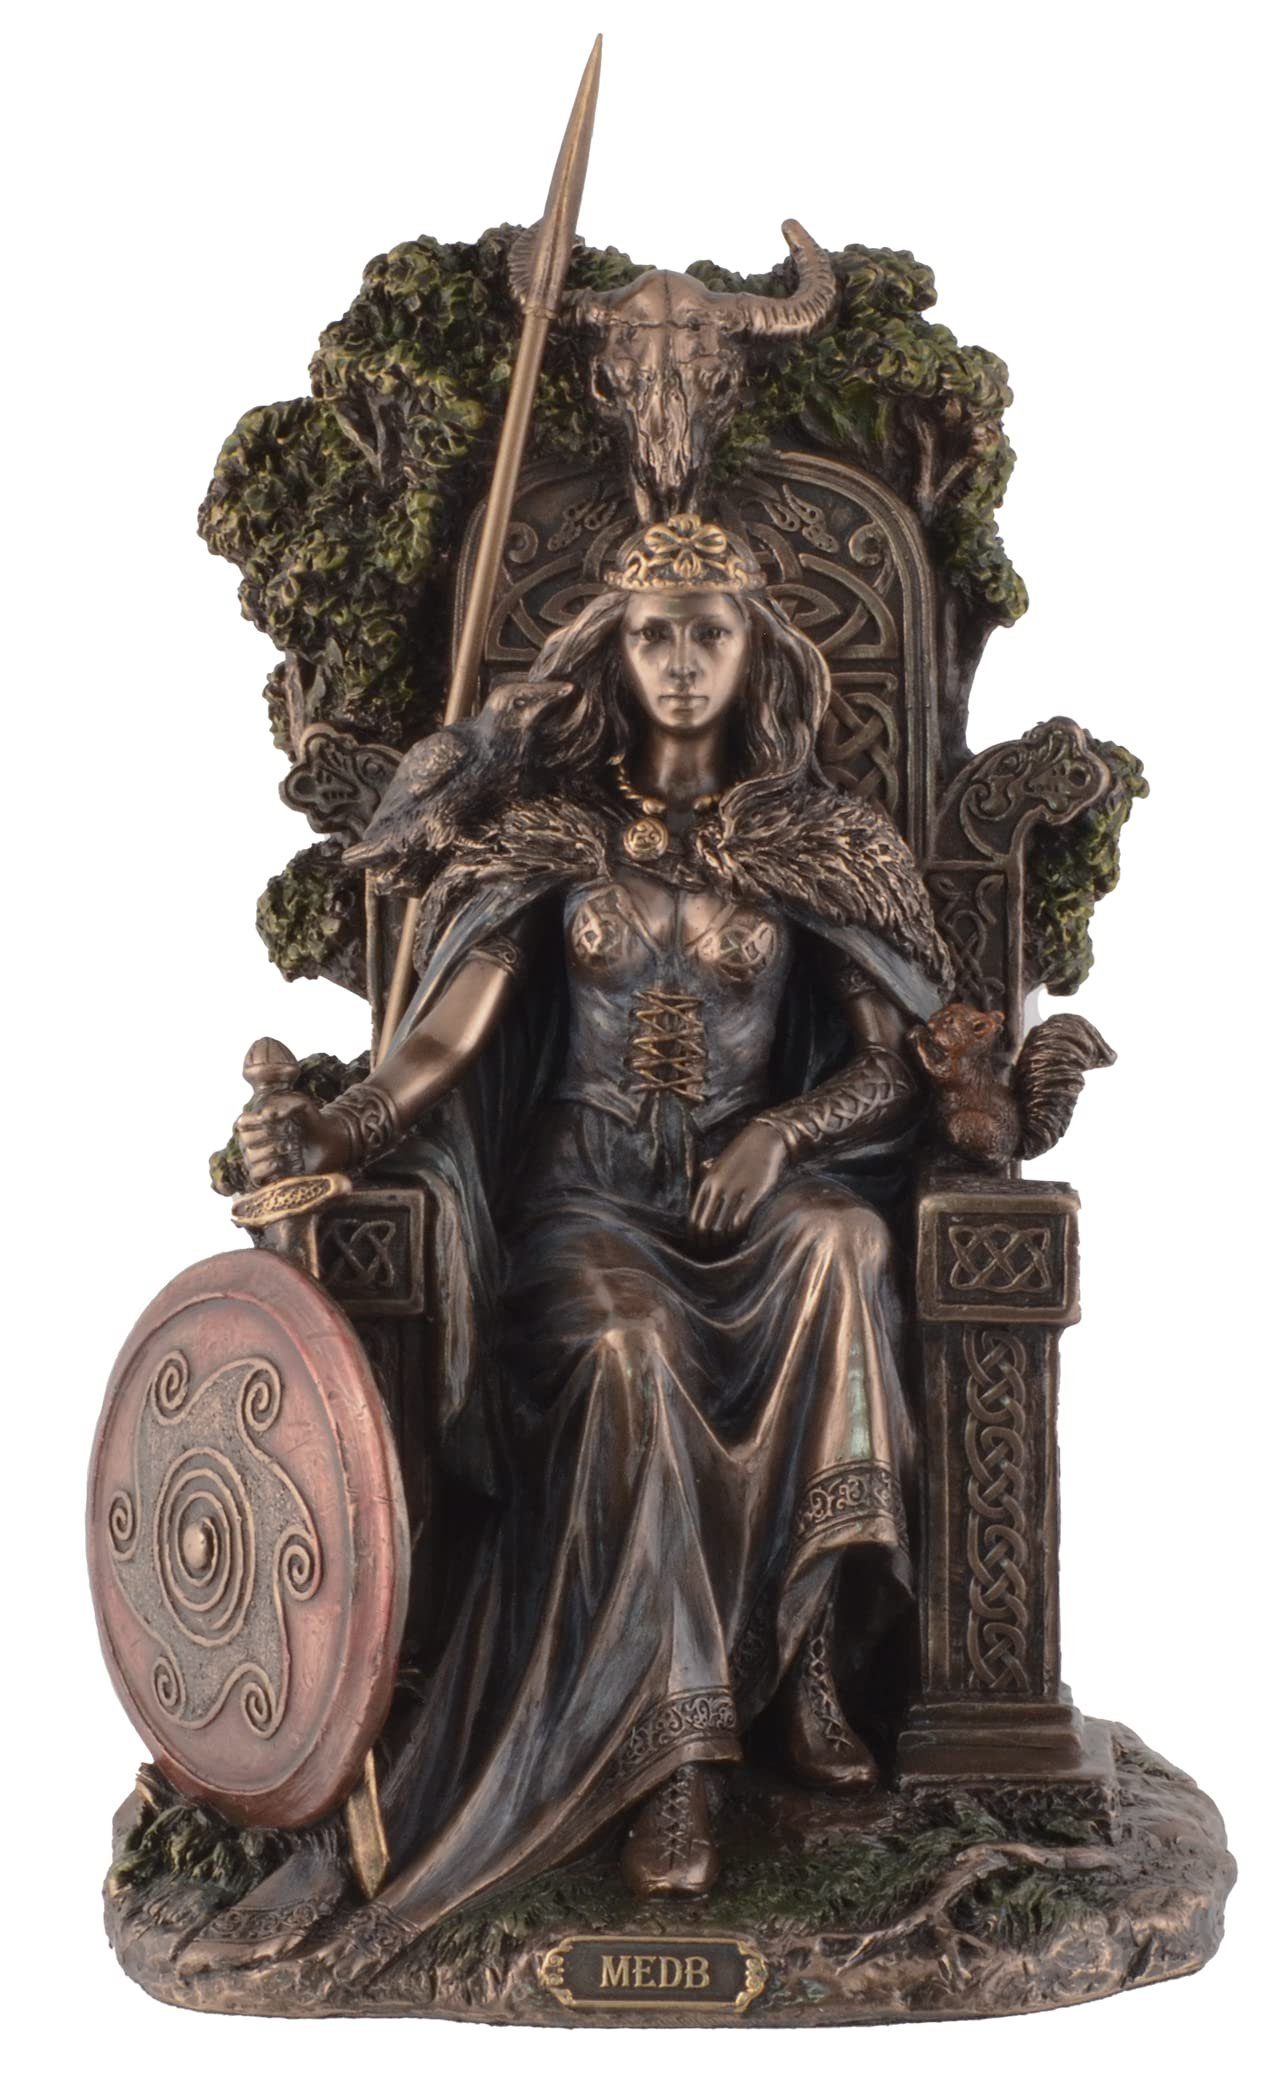 Vogler direct Gmbh Dekofigur Medb von Connacht keltische Sagenkönigin - by Veronese, von Hand bronziert und coloriert, LxBxH: ca. 14x15x22cm